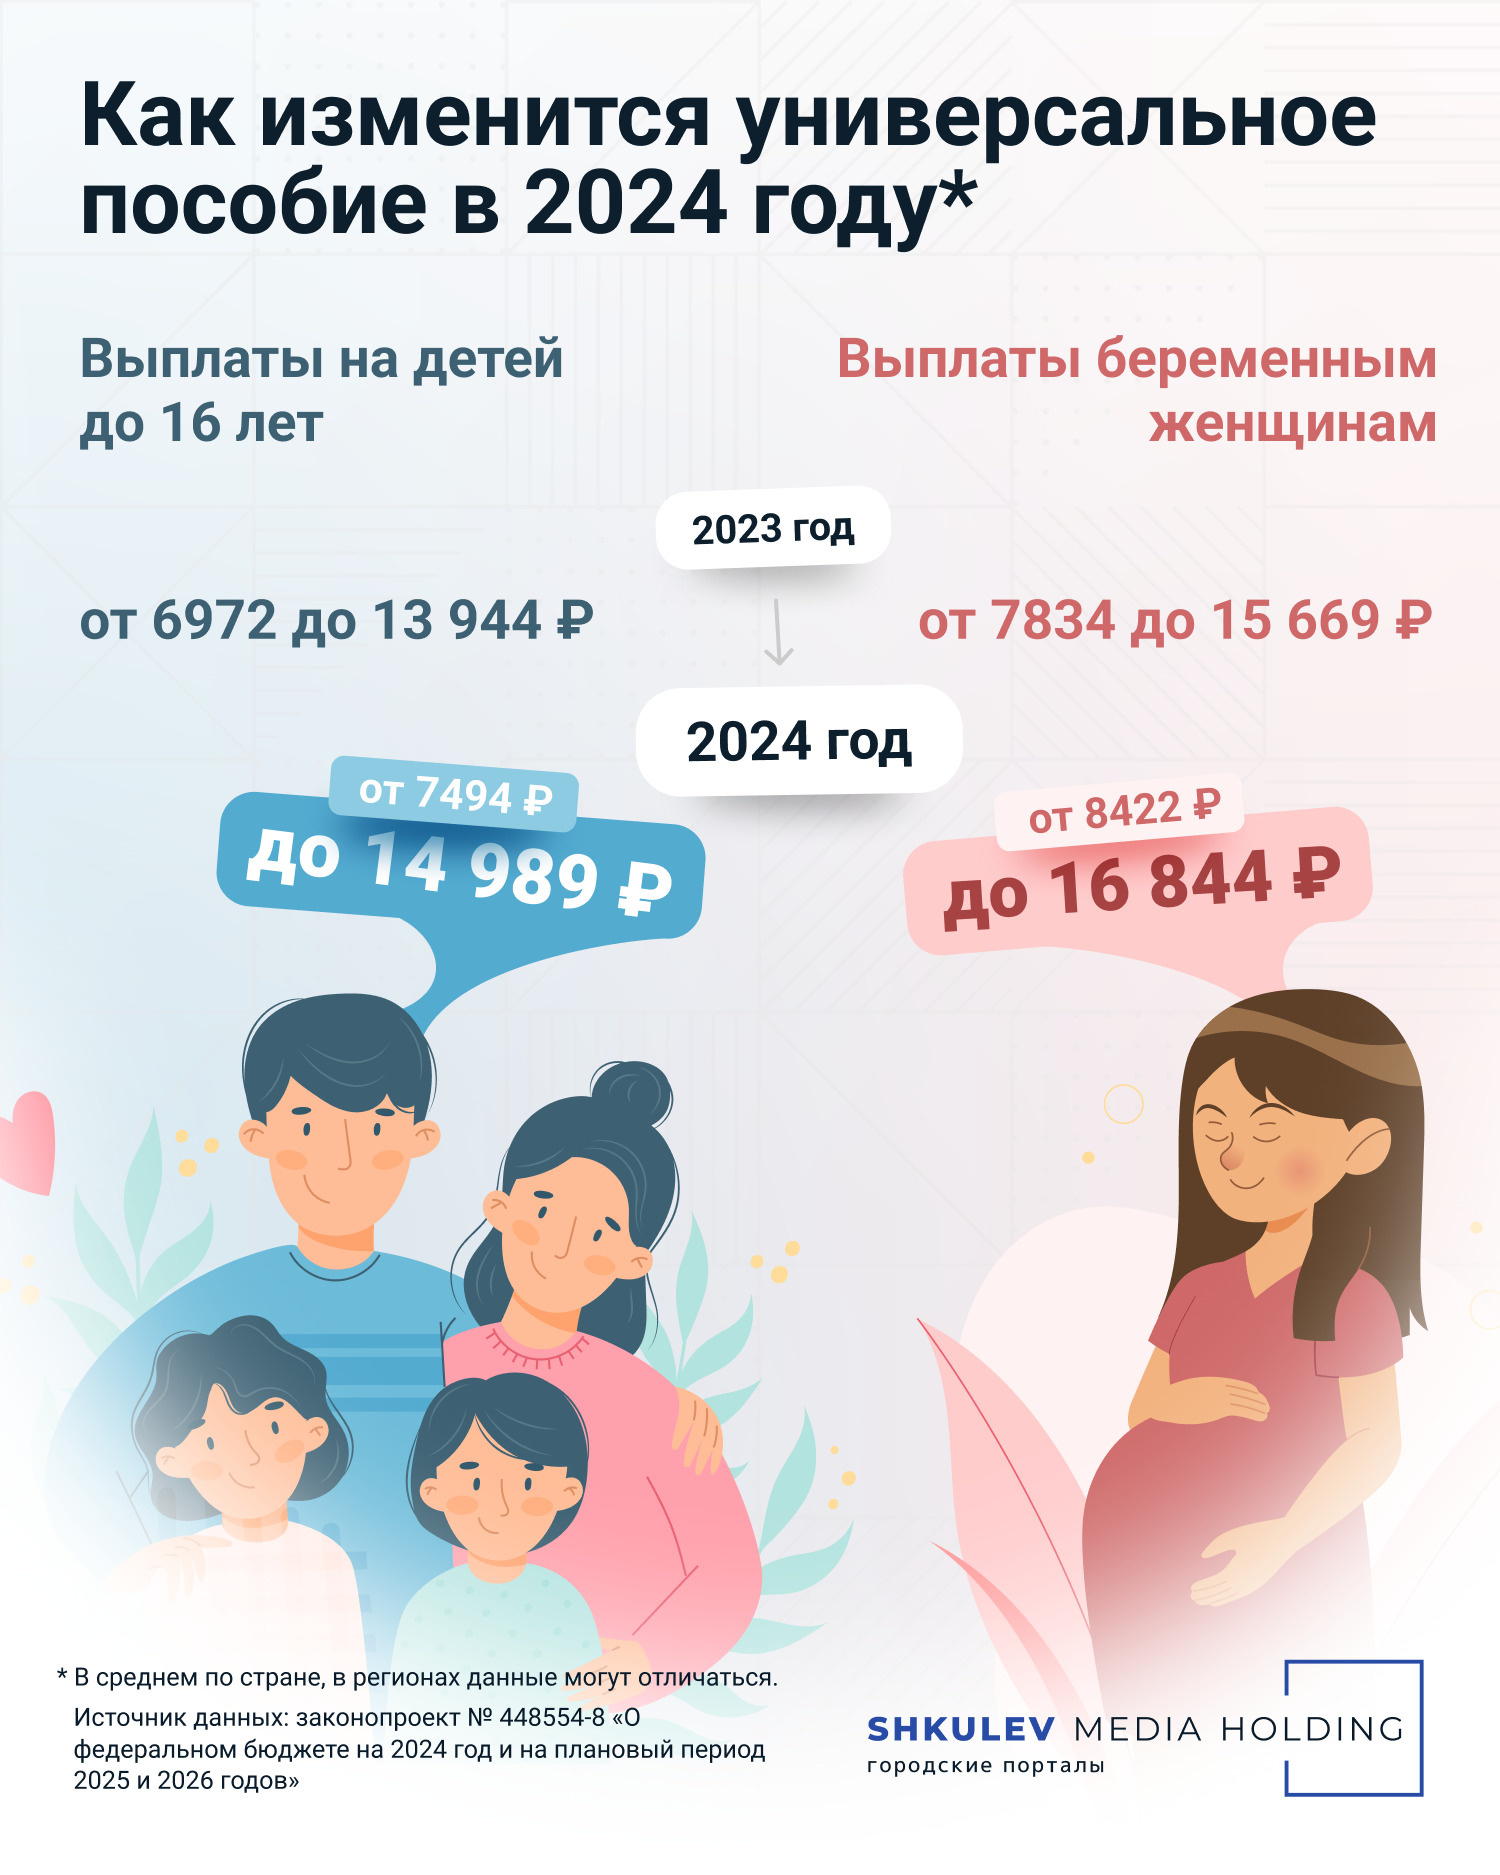 Размер универсального пособия на ребенка и пособия беременным в 2024 году -  28 ноября 2023 - НГС